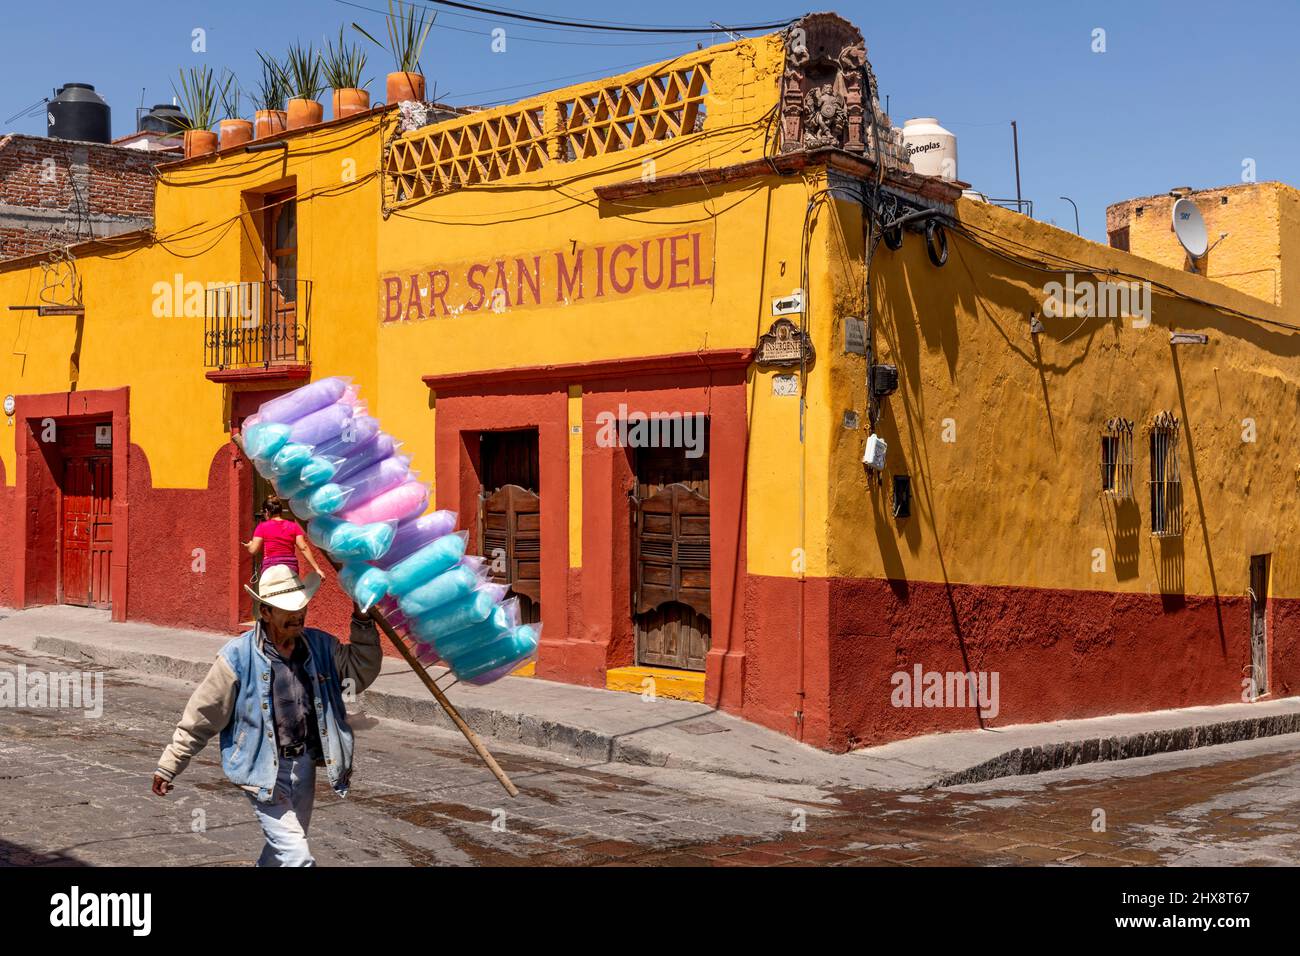 Mexiko, der Staat Guanajuato, San Miguel de Allende, Mann, der Zuckerwatte verkauft, läuft an der Bar San Miguel vorbei Stockfoto